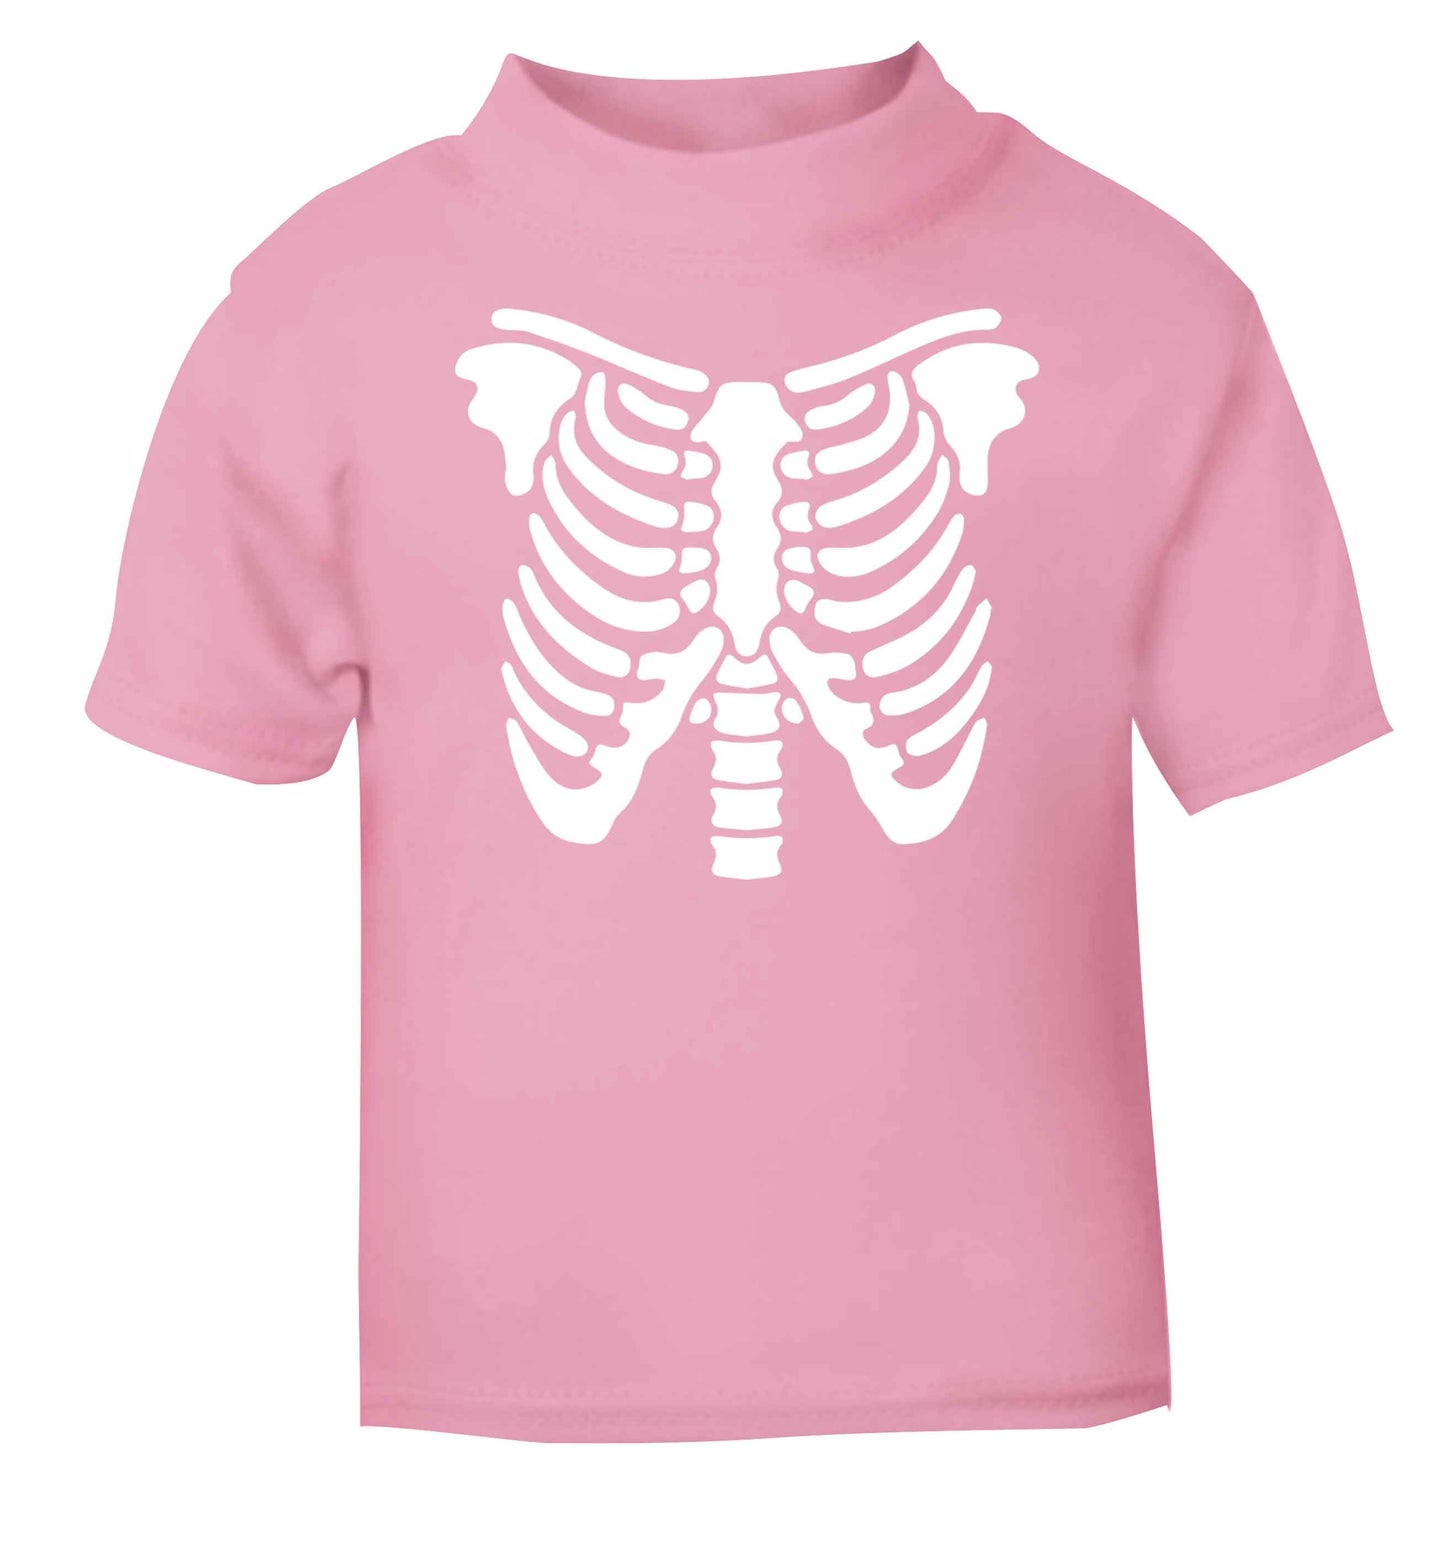 Skeleton ribcage light pink baby toddler Tshirt 2 Years